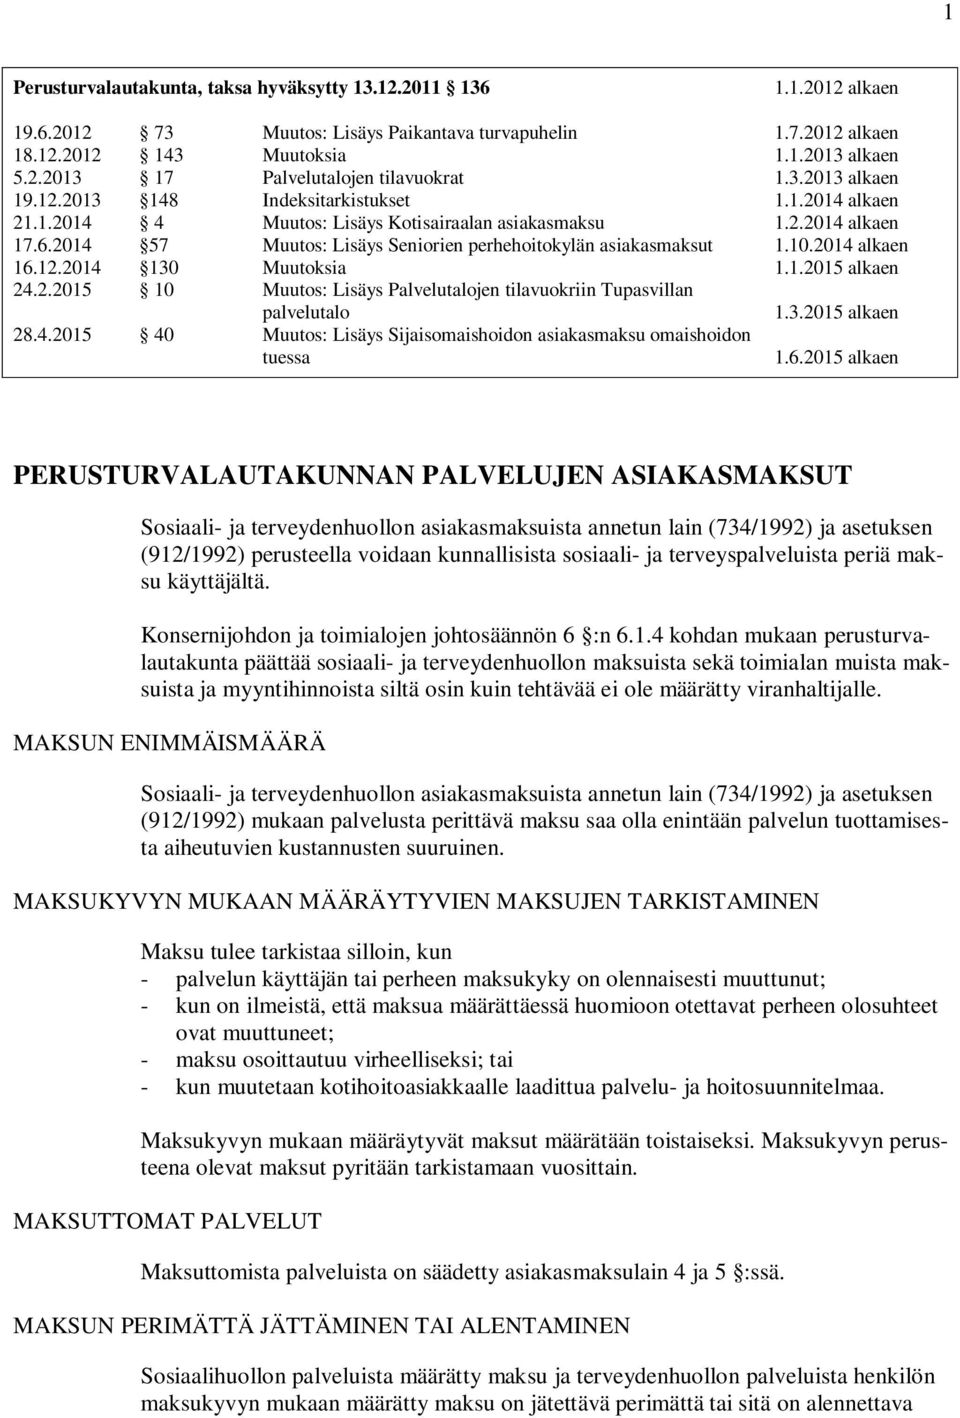 2014 57 Muutos: Lisäys Seniorien perhehoitokylän asiakasmaksut 1.10.2014 alkaen 16.12.2014 130 Muutoksia 1.1.2015 alkaen 24.2.2015 10 Muutos: Lisäys Palvelutalojen tilavuokriin Tupasvillan palvelutalo 1.